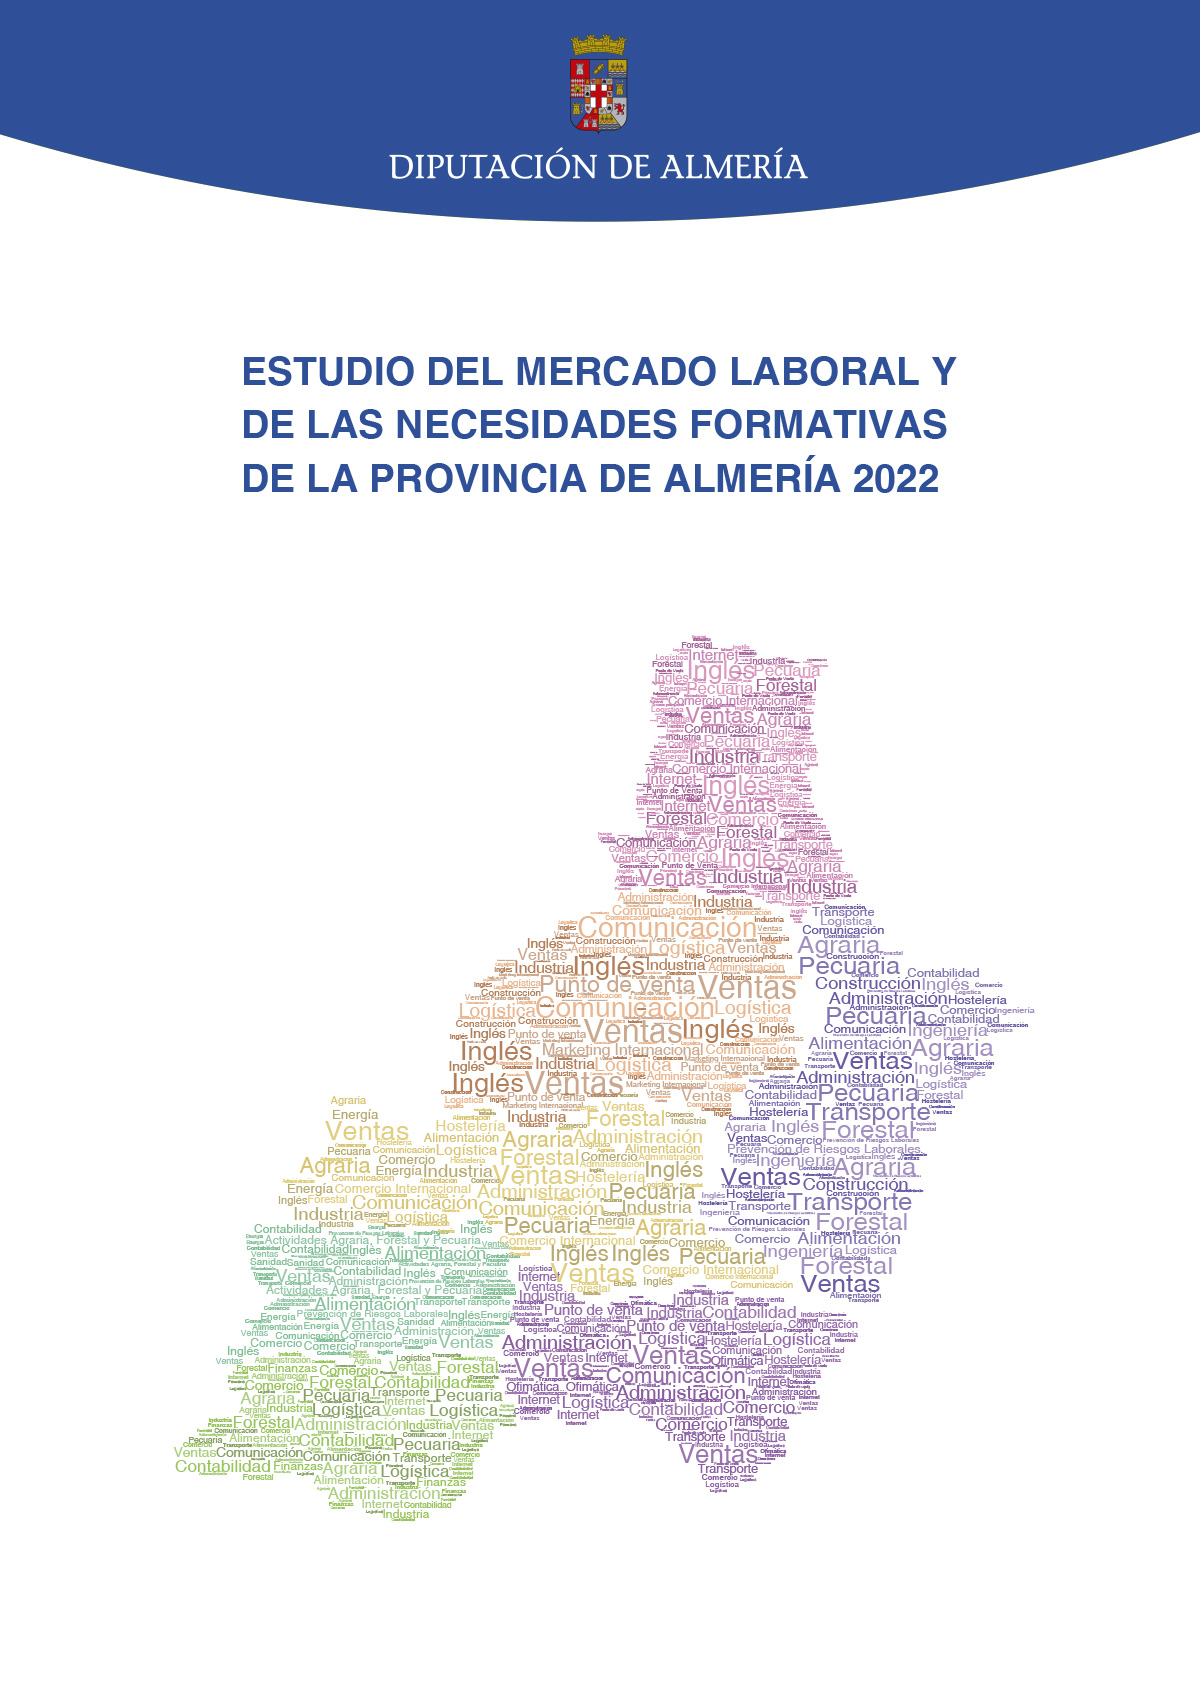 ESTUDIO DEL MERCADO LABORAL Y DE LAS NECESIDADES FORMATIVAS DE LA PROVINCIA DE ALMERÍA 2022